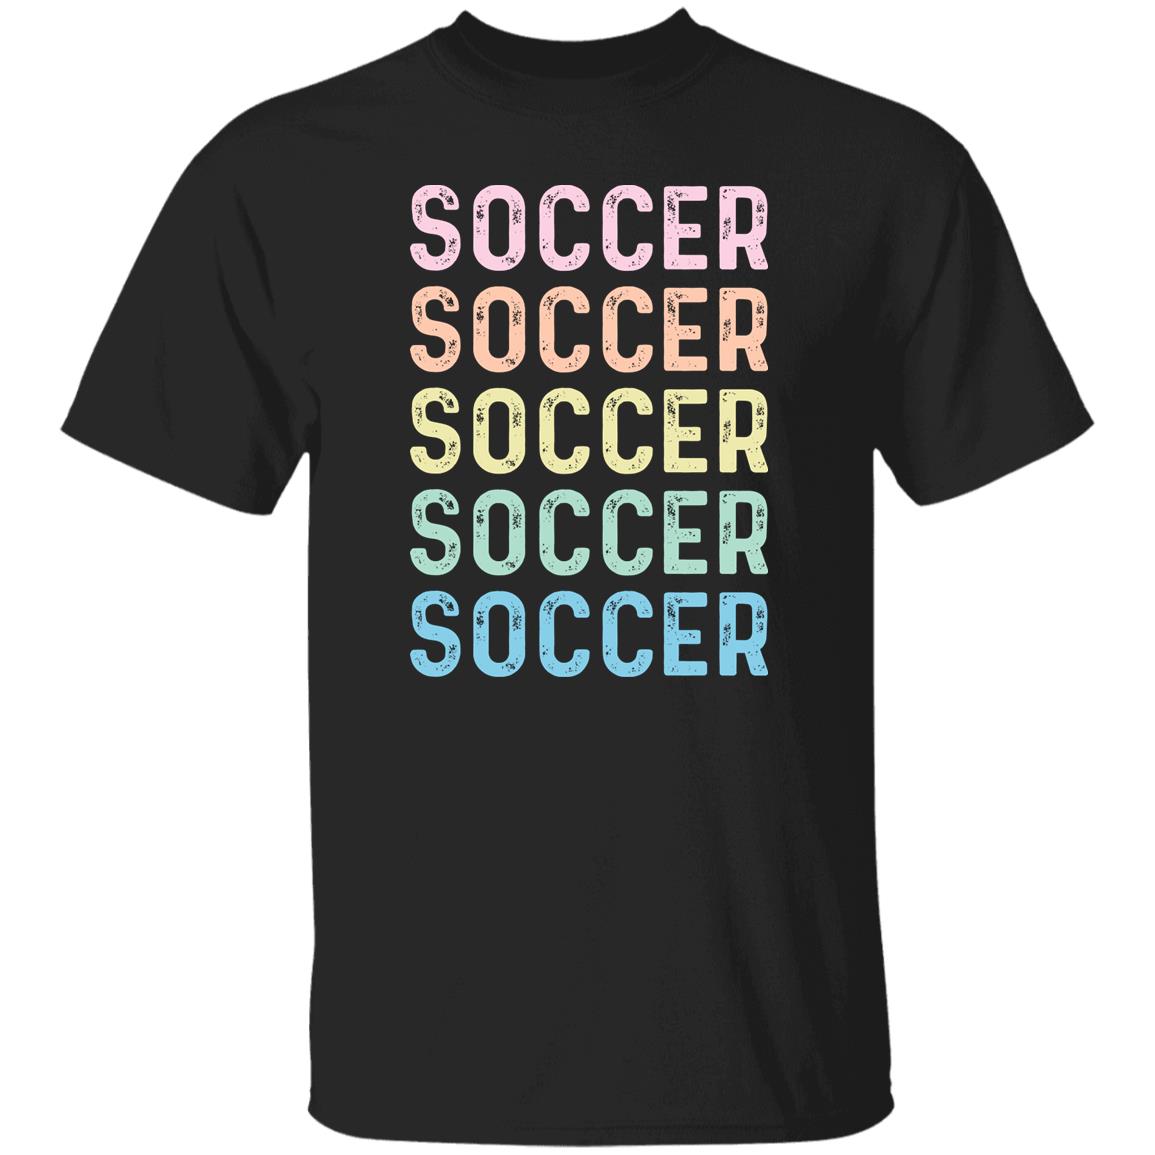 Soccer Unisex Shirt, Soccer player tee Black S-2XL-Black-Family-Gift-Planet